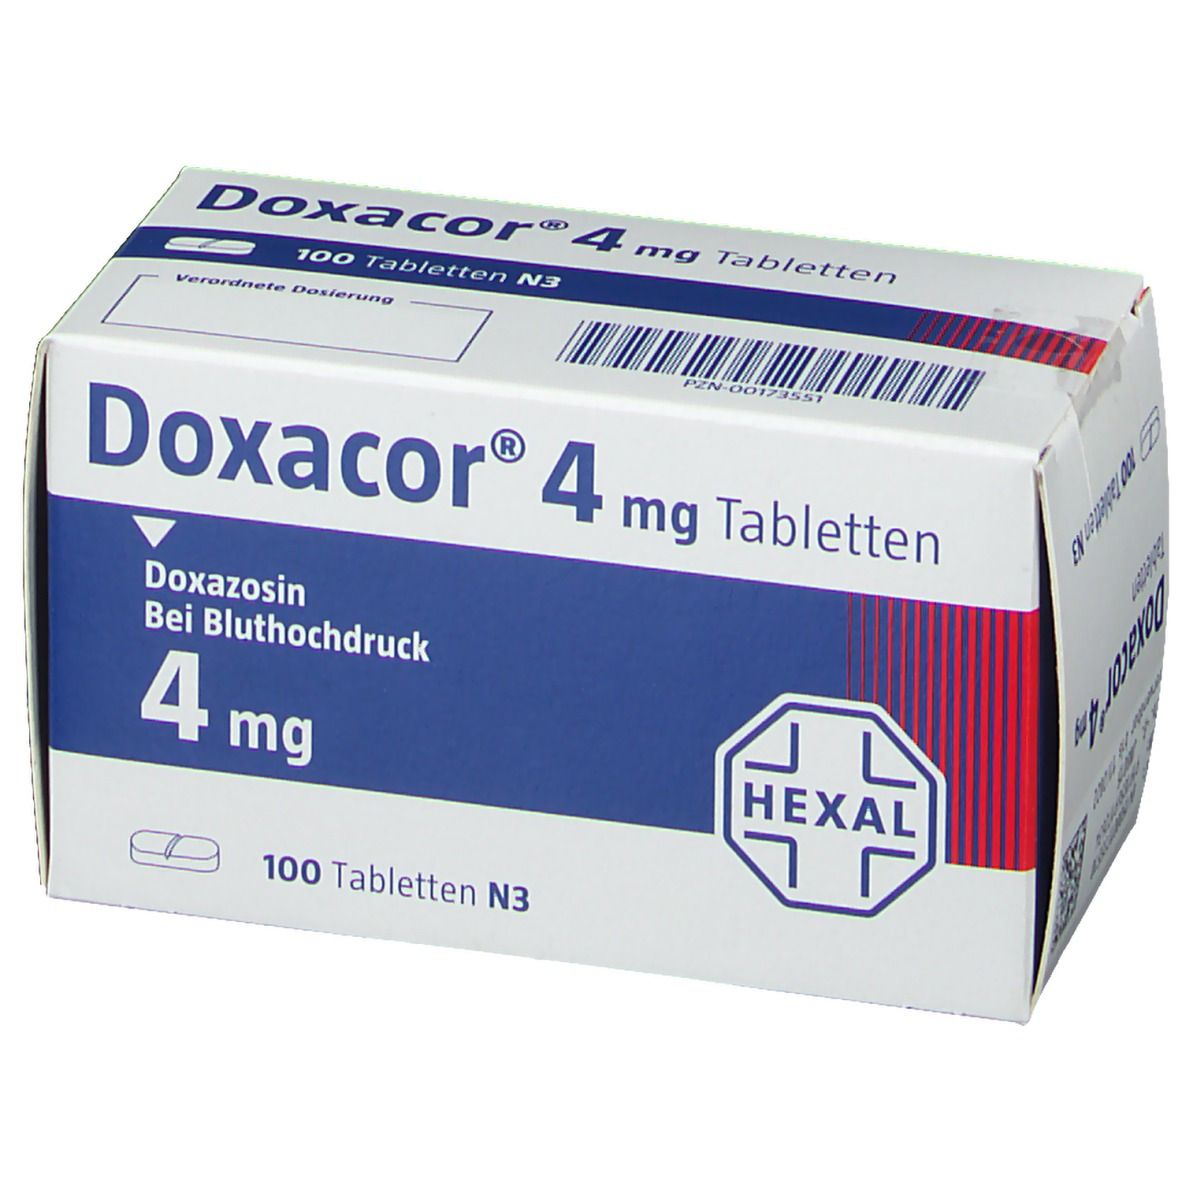 Doxacor® 4 mg